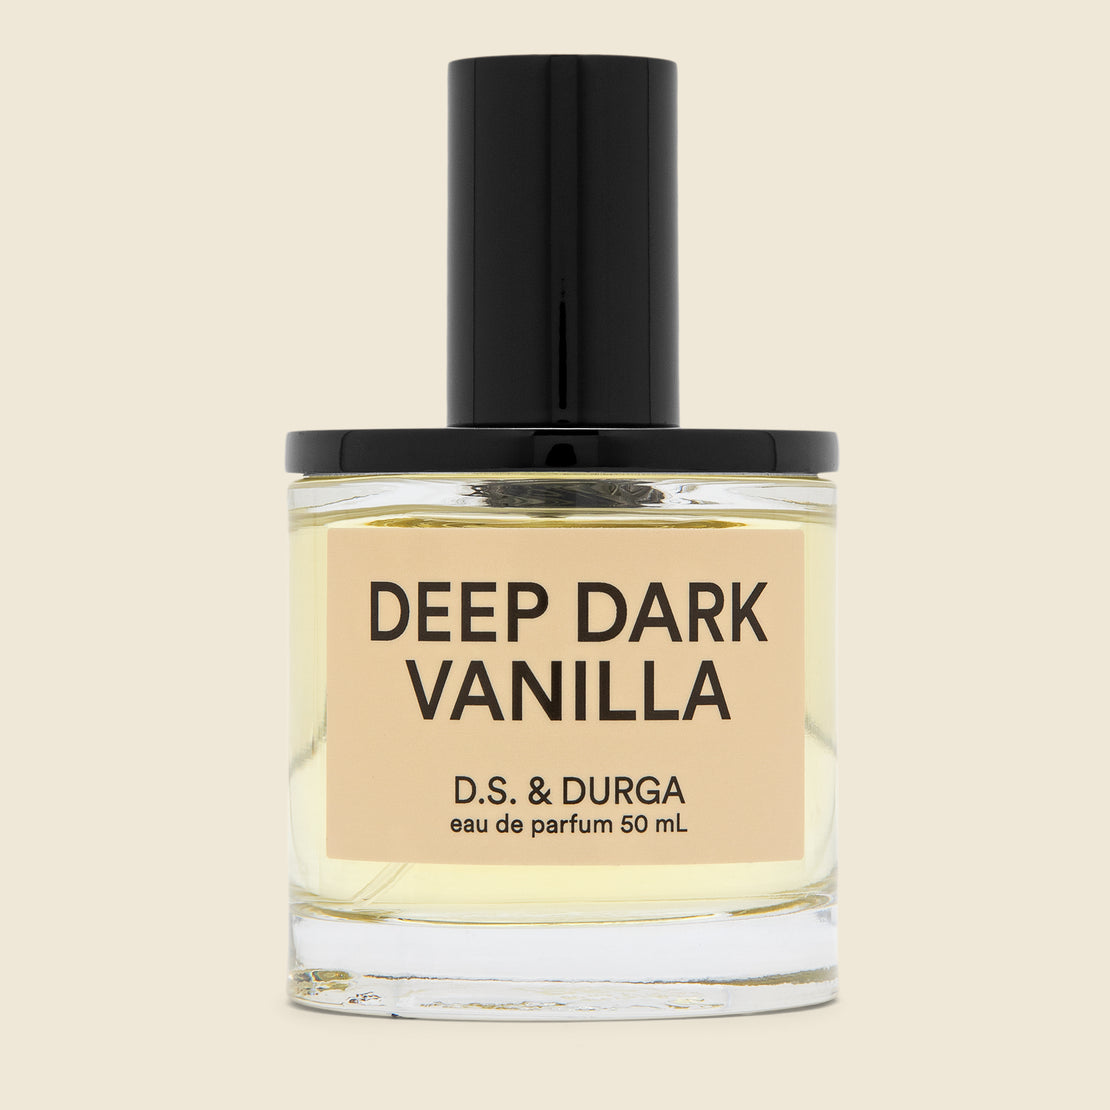 Dark Vanilla Eau de Parfum - D.S. & Durga - STAG Provisions - Home - Chemist - Cologne